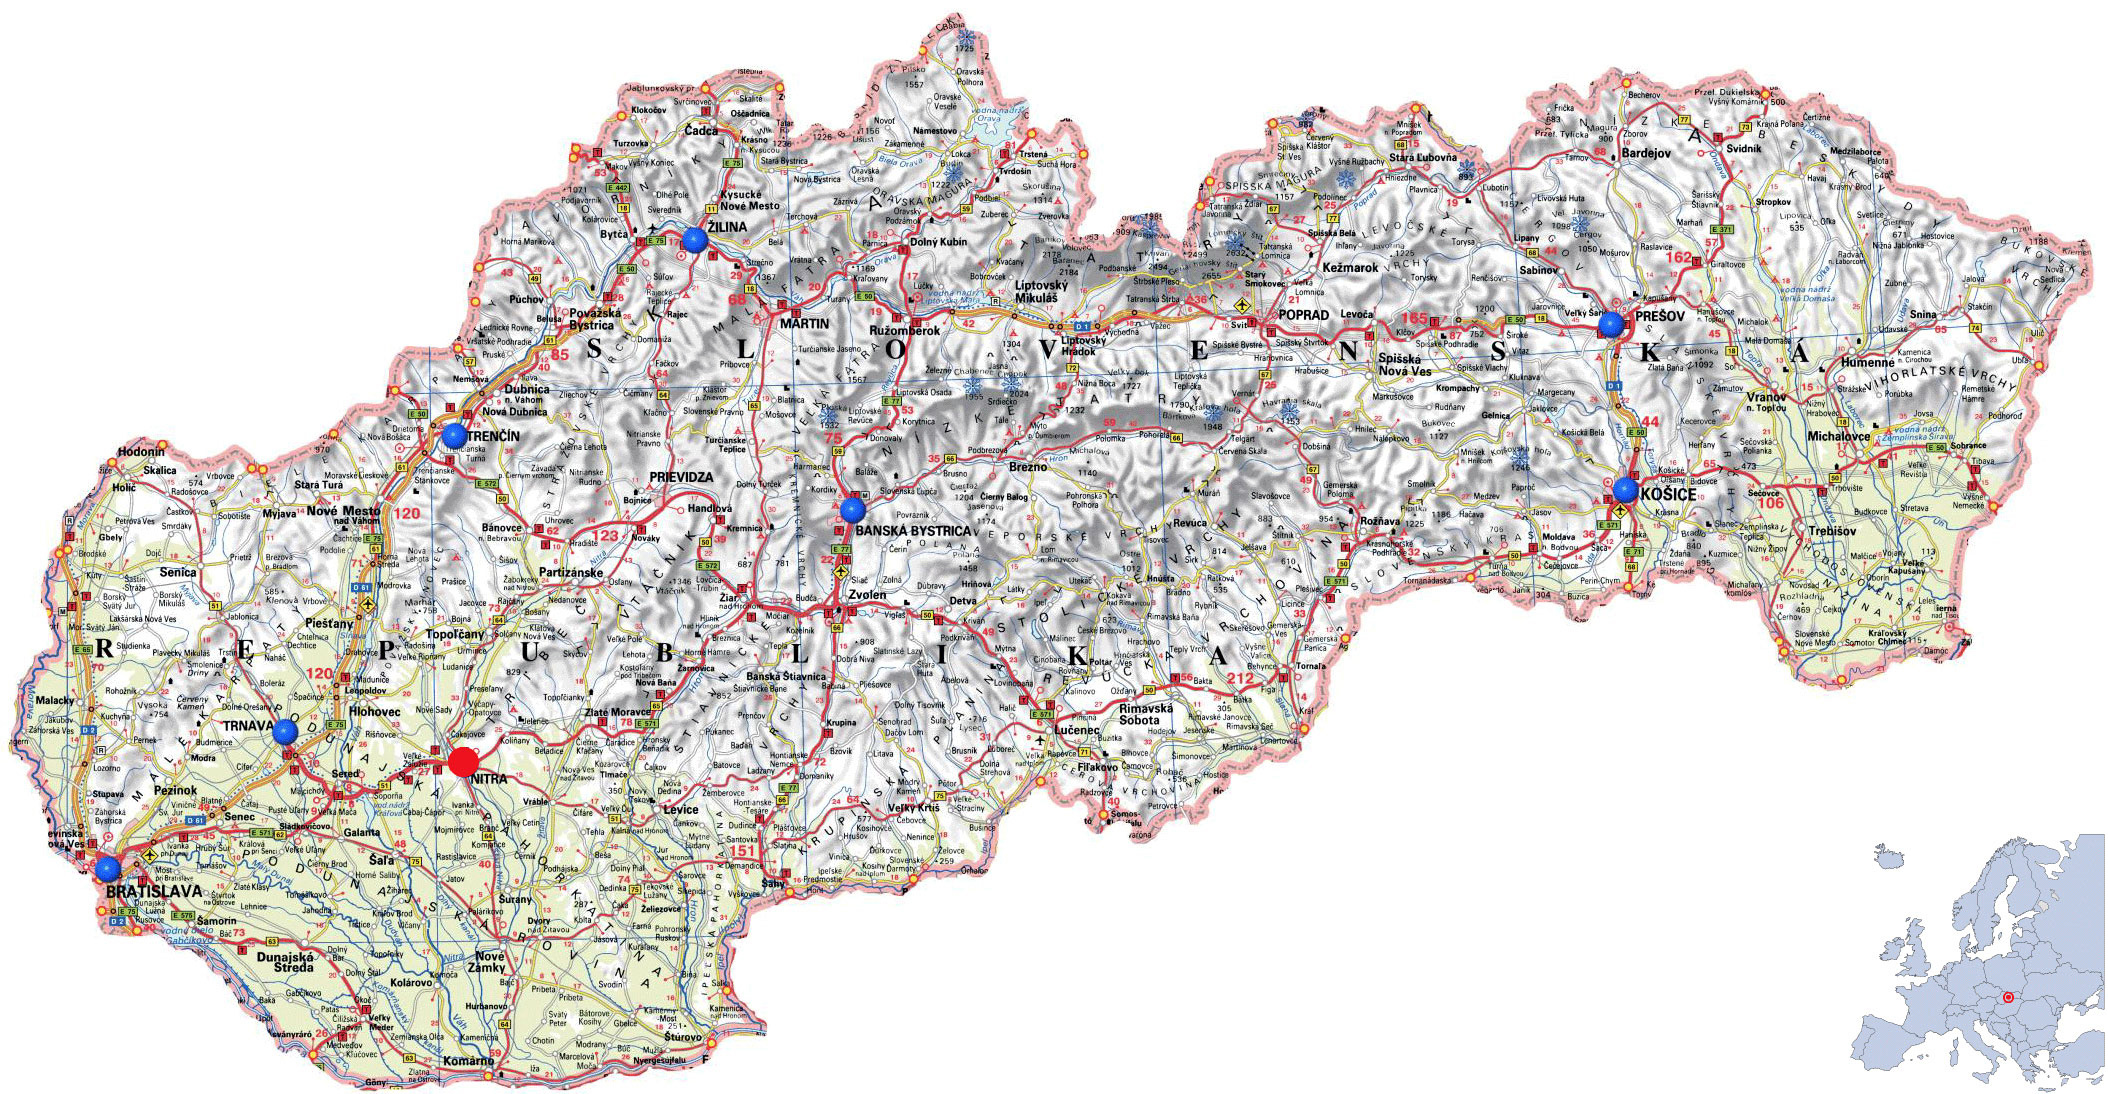 Подробная физическая карта Словакии на словацком языке. Подробнаяфизическая карта Словакии с автодорогами